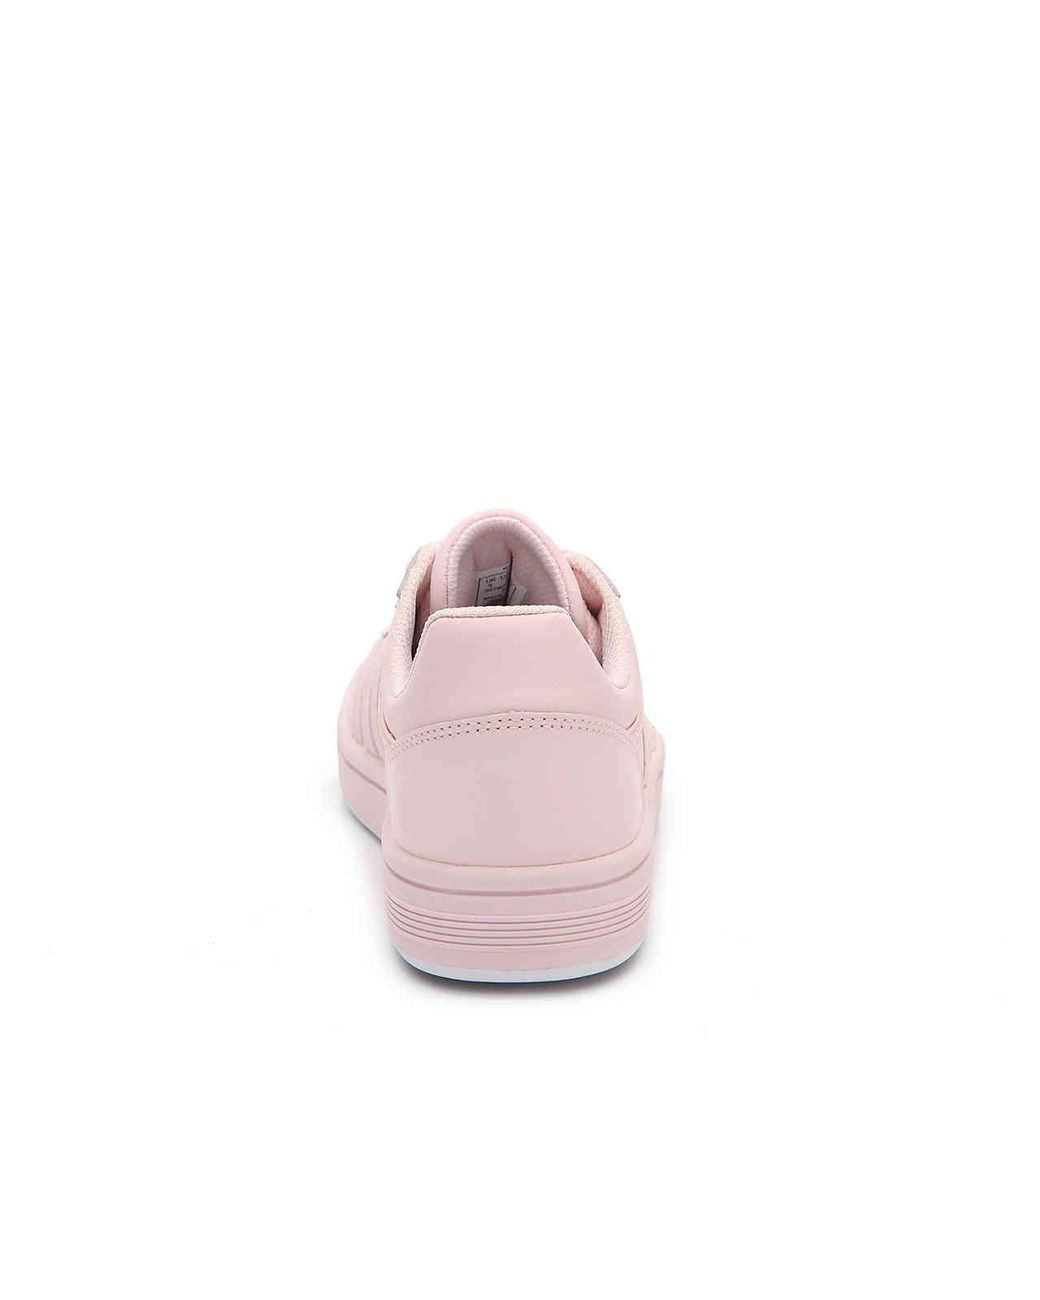 K-swiss Chesterfield Sneaker in Pink | Lyst